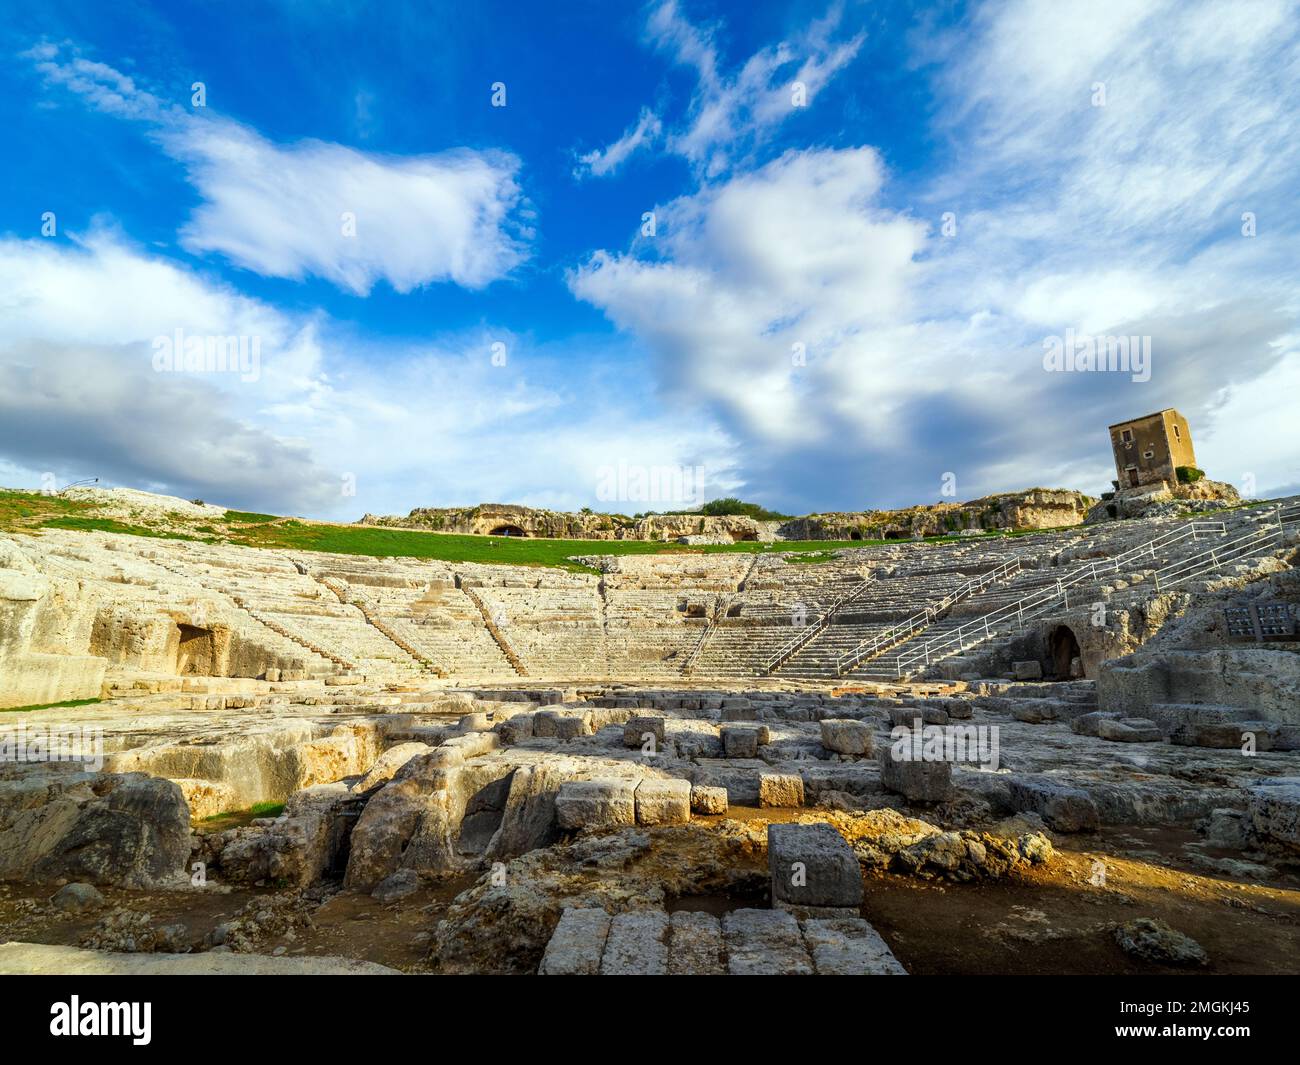 Das griechische Theater von Syracuse ist ein Theater im Archäologischen Park von Neapolis, an den Pisten auf der Südseite des Temeniten-Hügels, in Syrakus, Sizilien. Erbaut im 5. Jahrhundert v. Chr., wurde es dann im 3. Jahrhundert v. Chr. wieder aufgebaut. Und immer noch verwandelt in römischen Zeiten - Neapolis Archäologischer Park - Syrakus, Sizilien, Italien Stockfoto